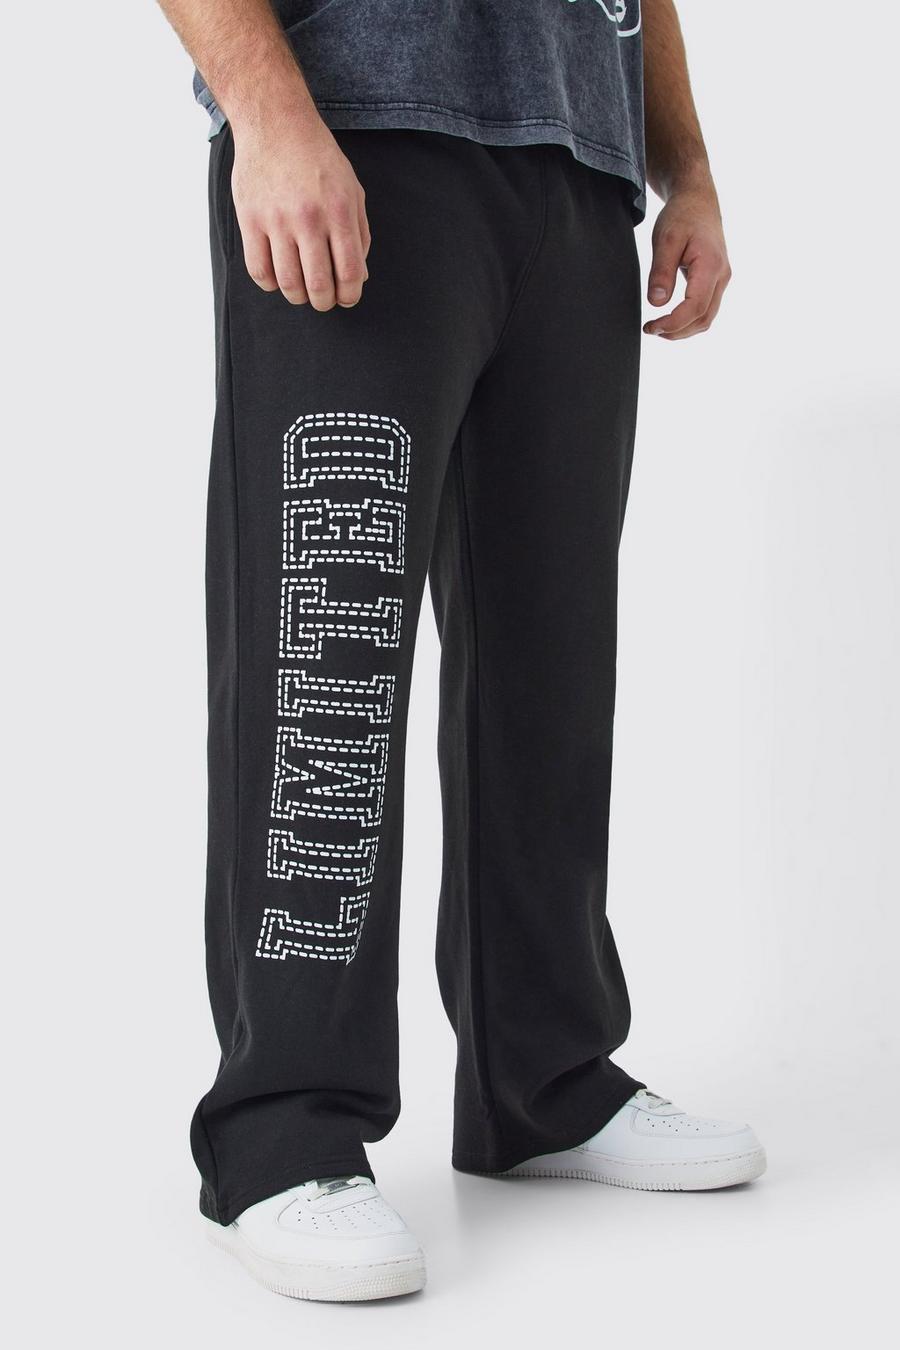 Pantaloni tuta Plus Size oversize Limited neri, Black